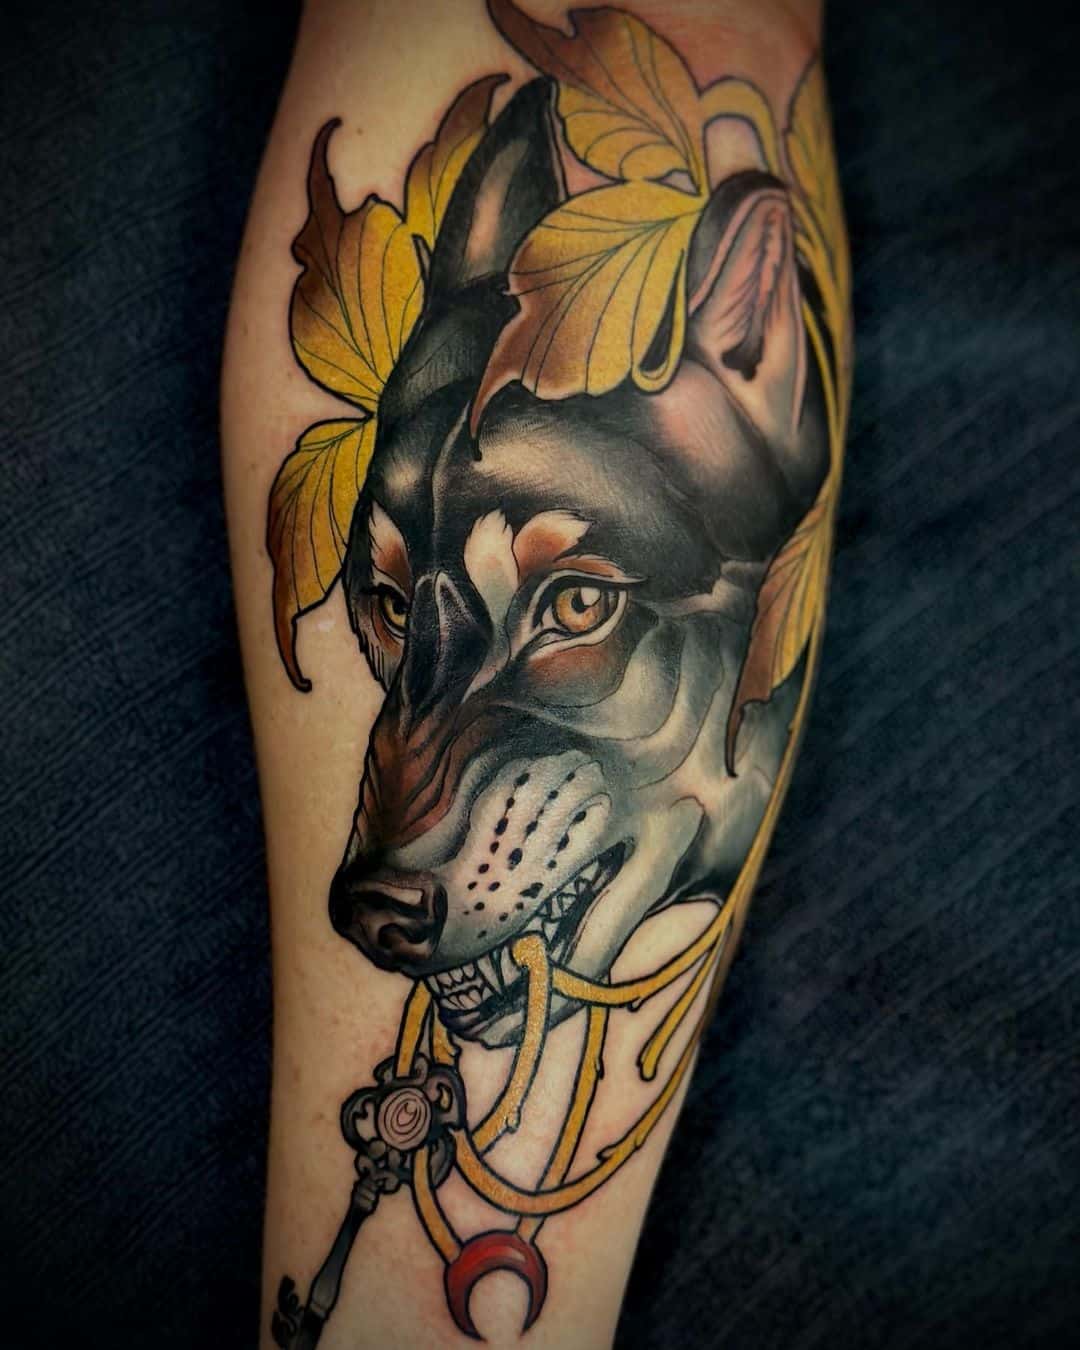 dog neotrad style tattoo by sydney based artist Neomy